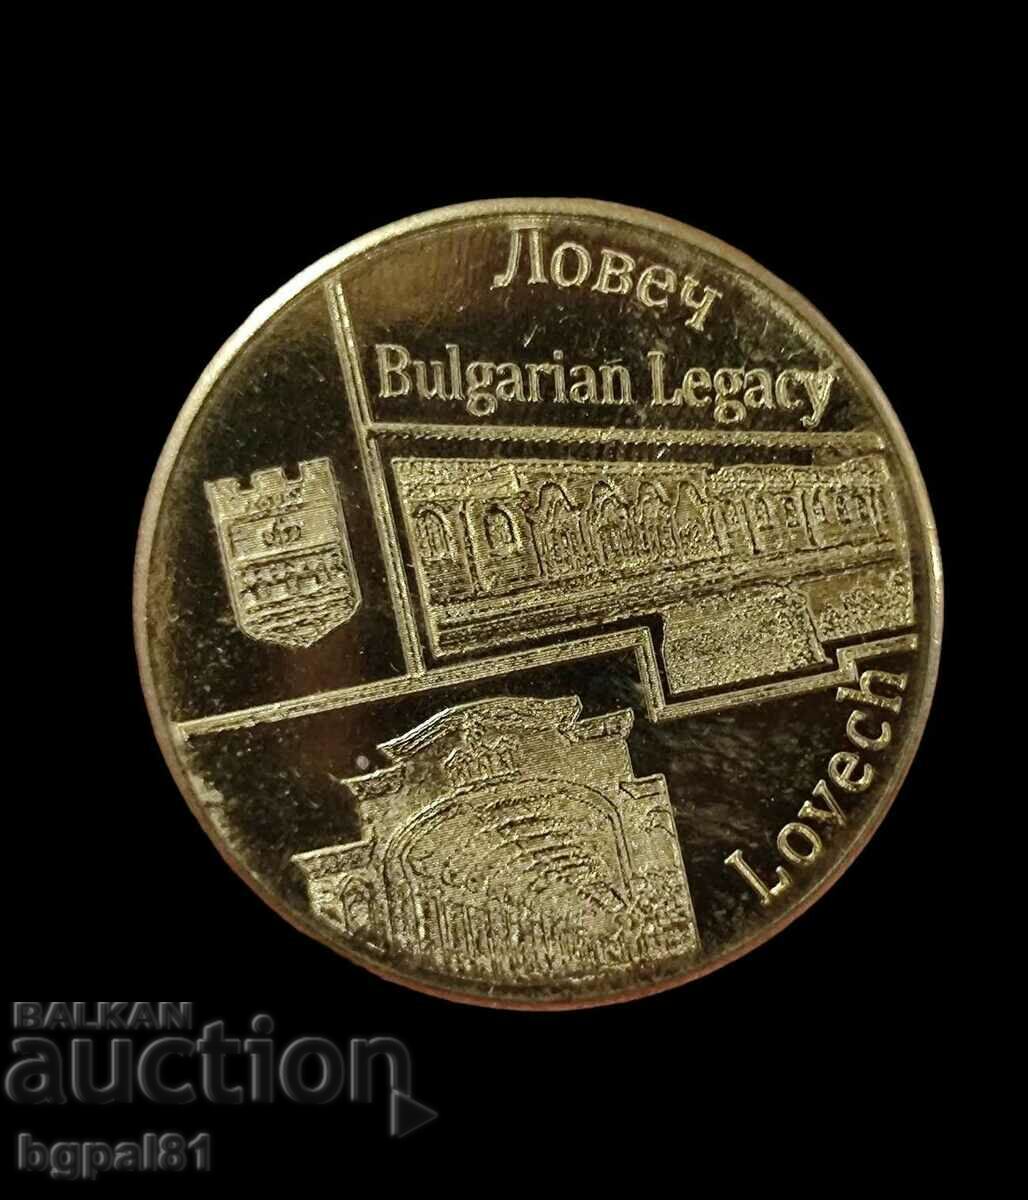 Ловеч - Медална емисия "Bulgarian legacy"